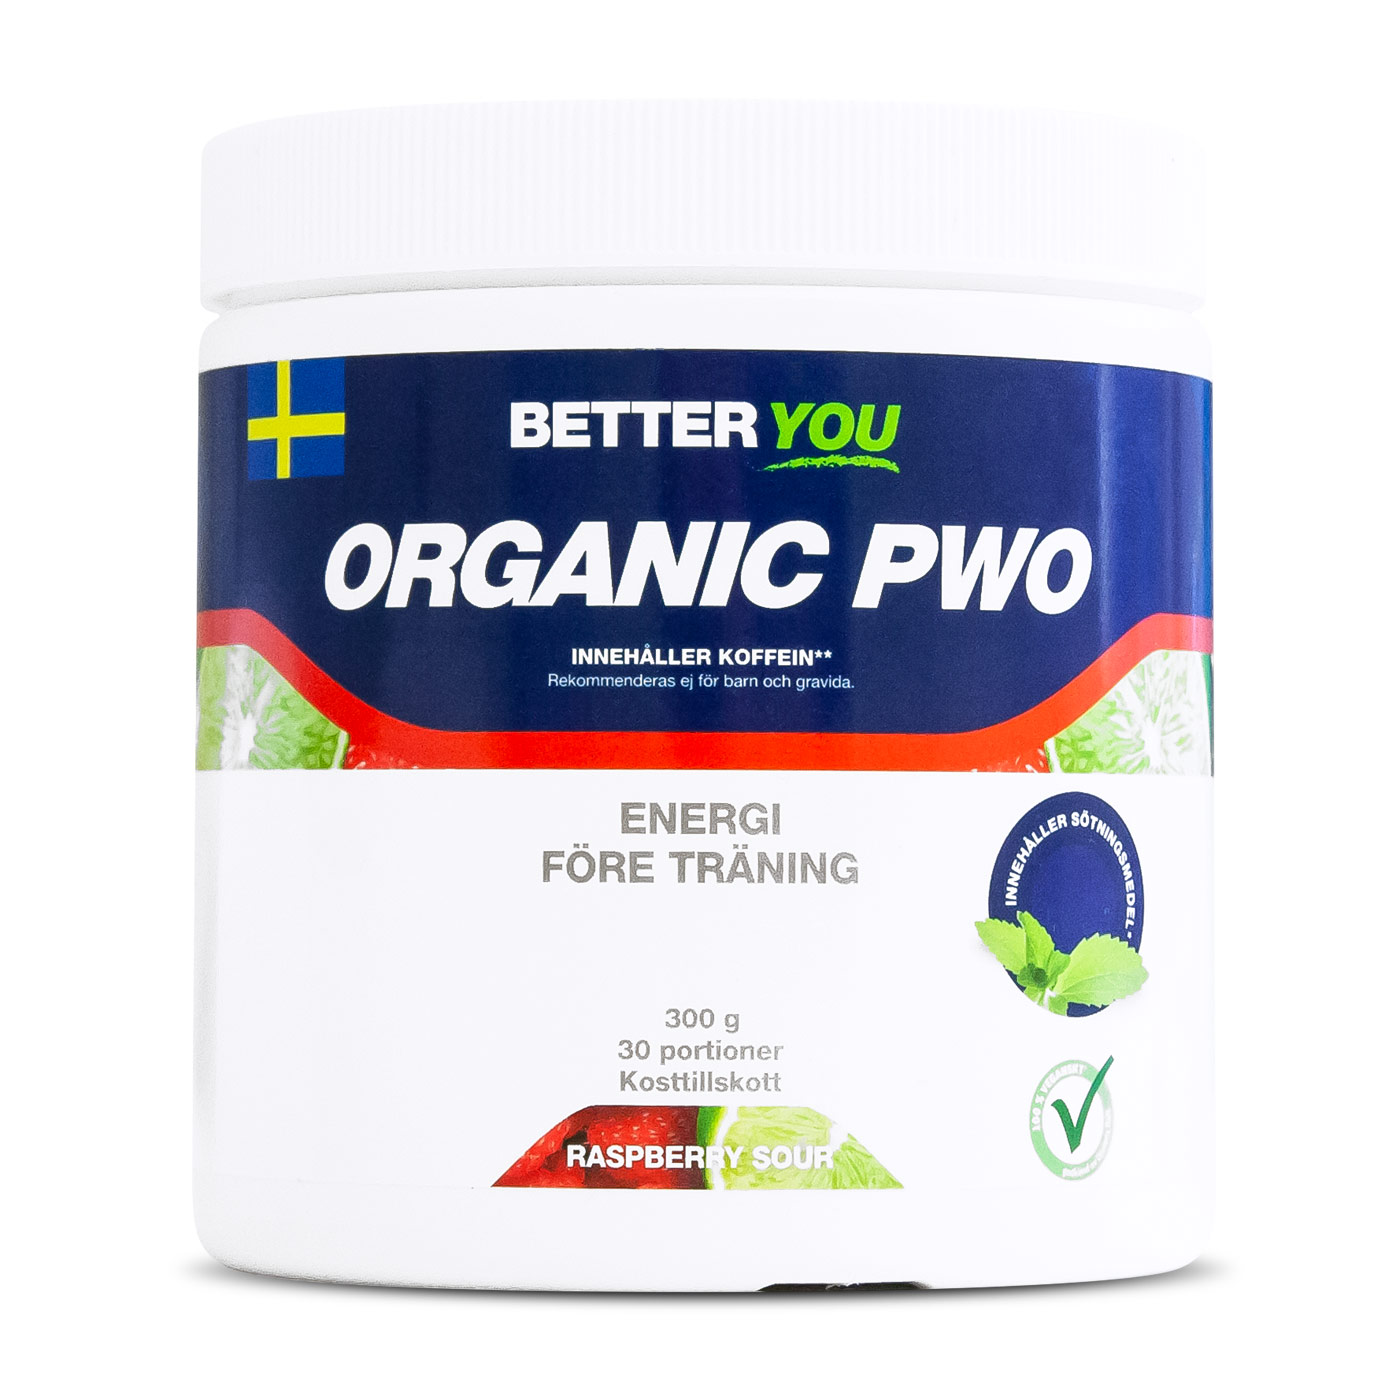 Organic PWO